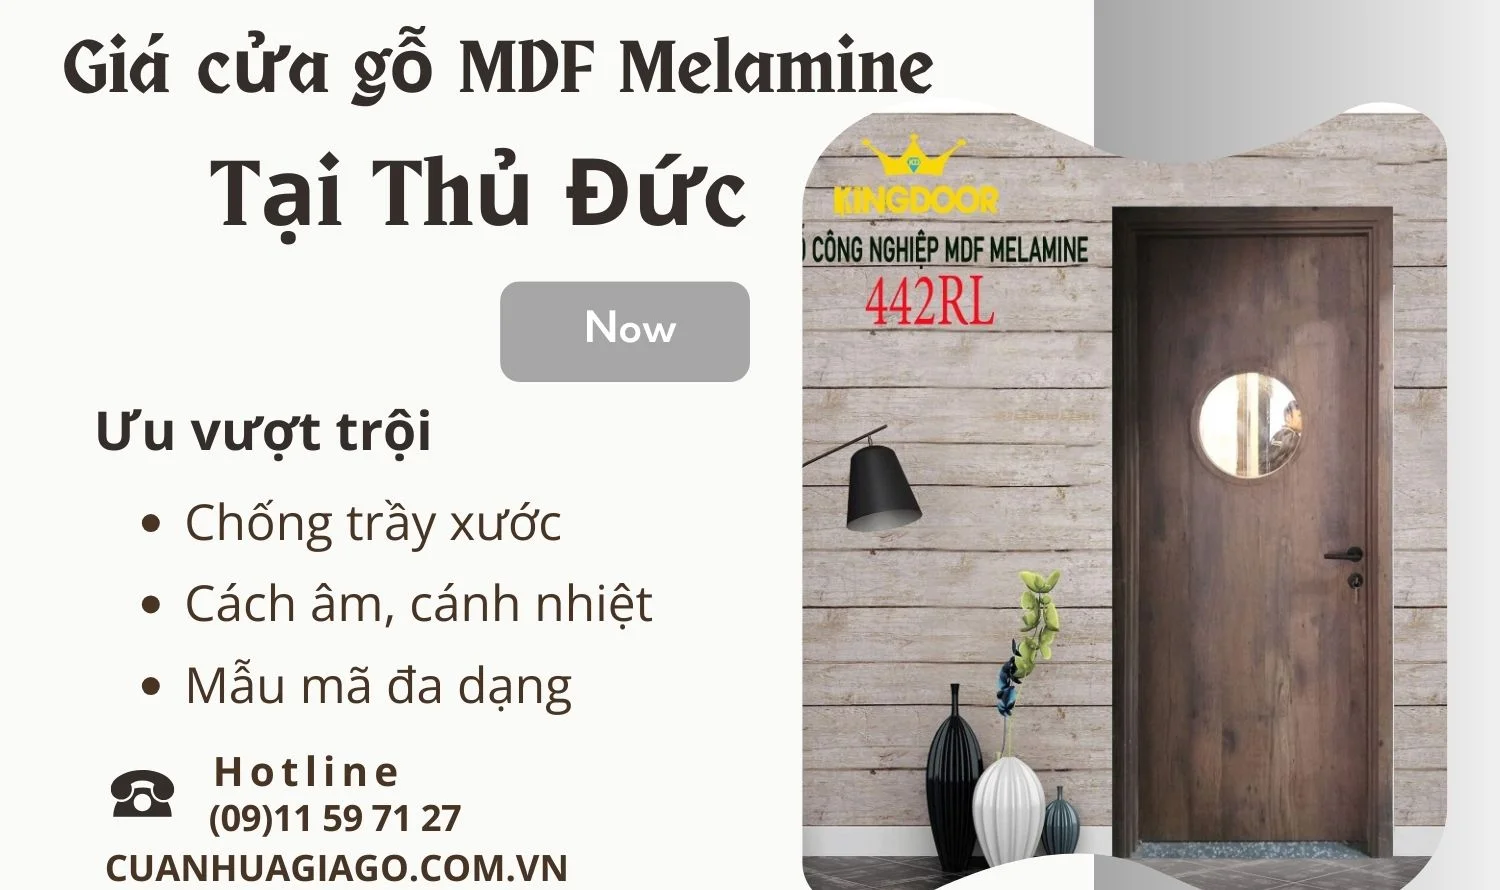 AVT-Gia-cua-go-MDF-Melamine-tai-Thu-Duc